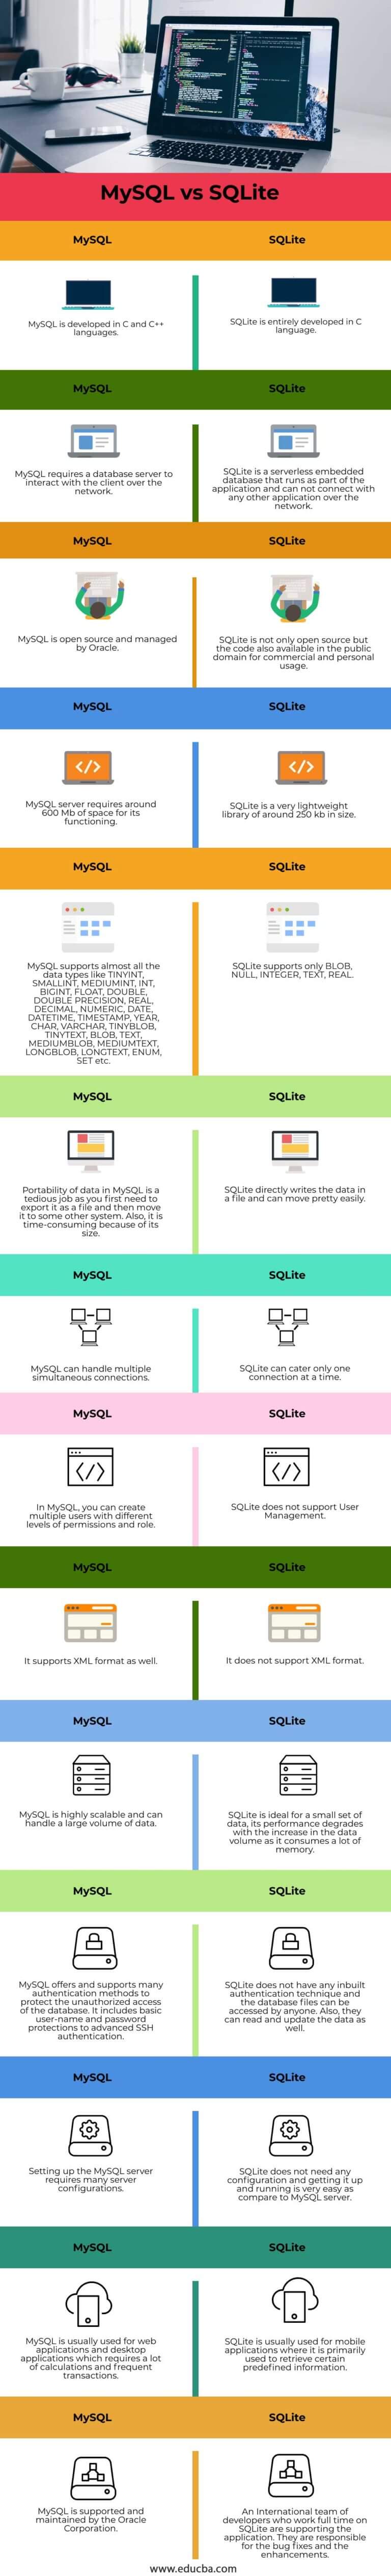 sqlite vs mysql for website